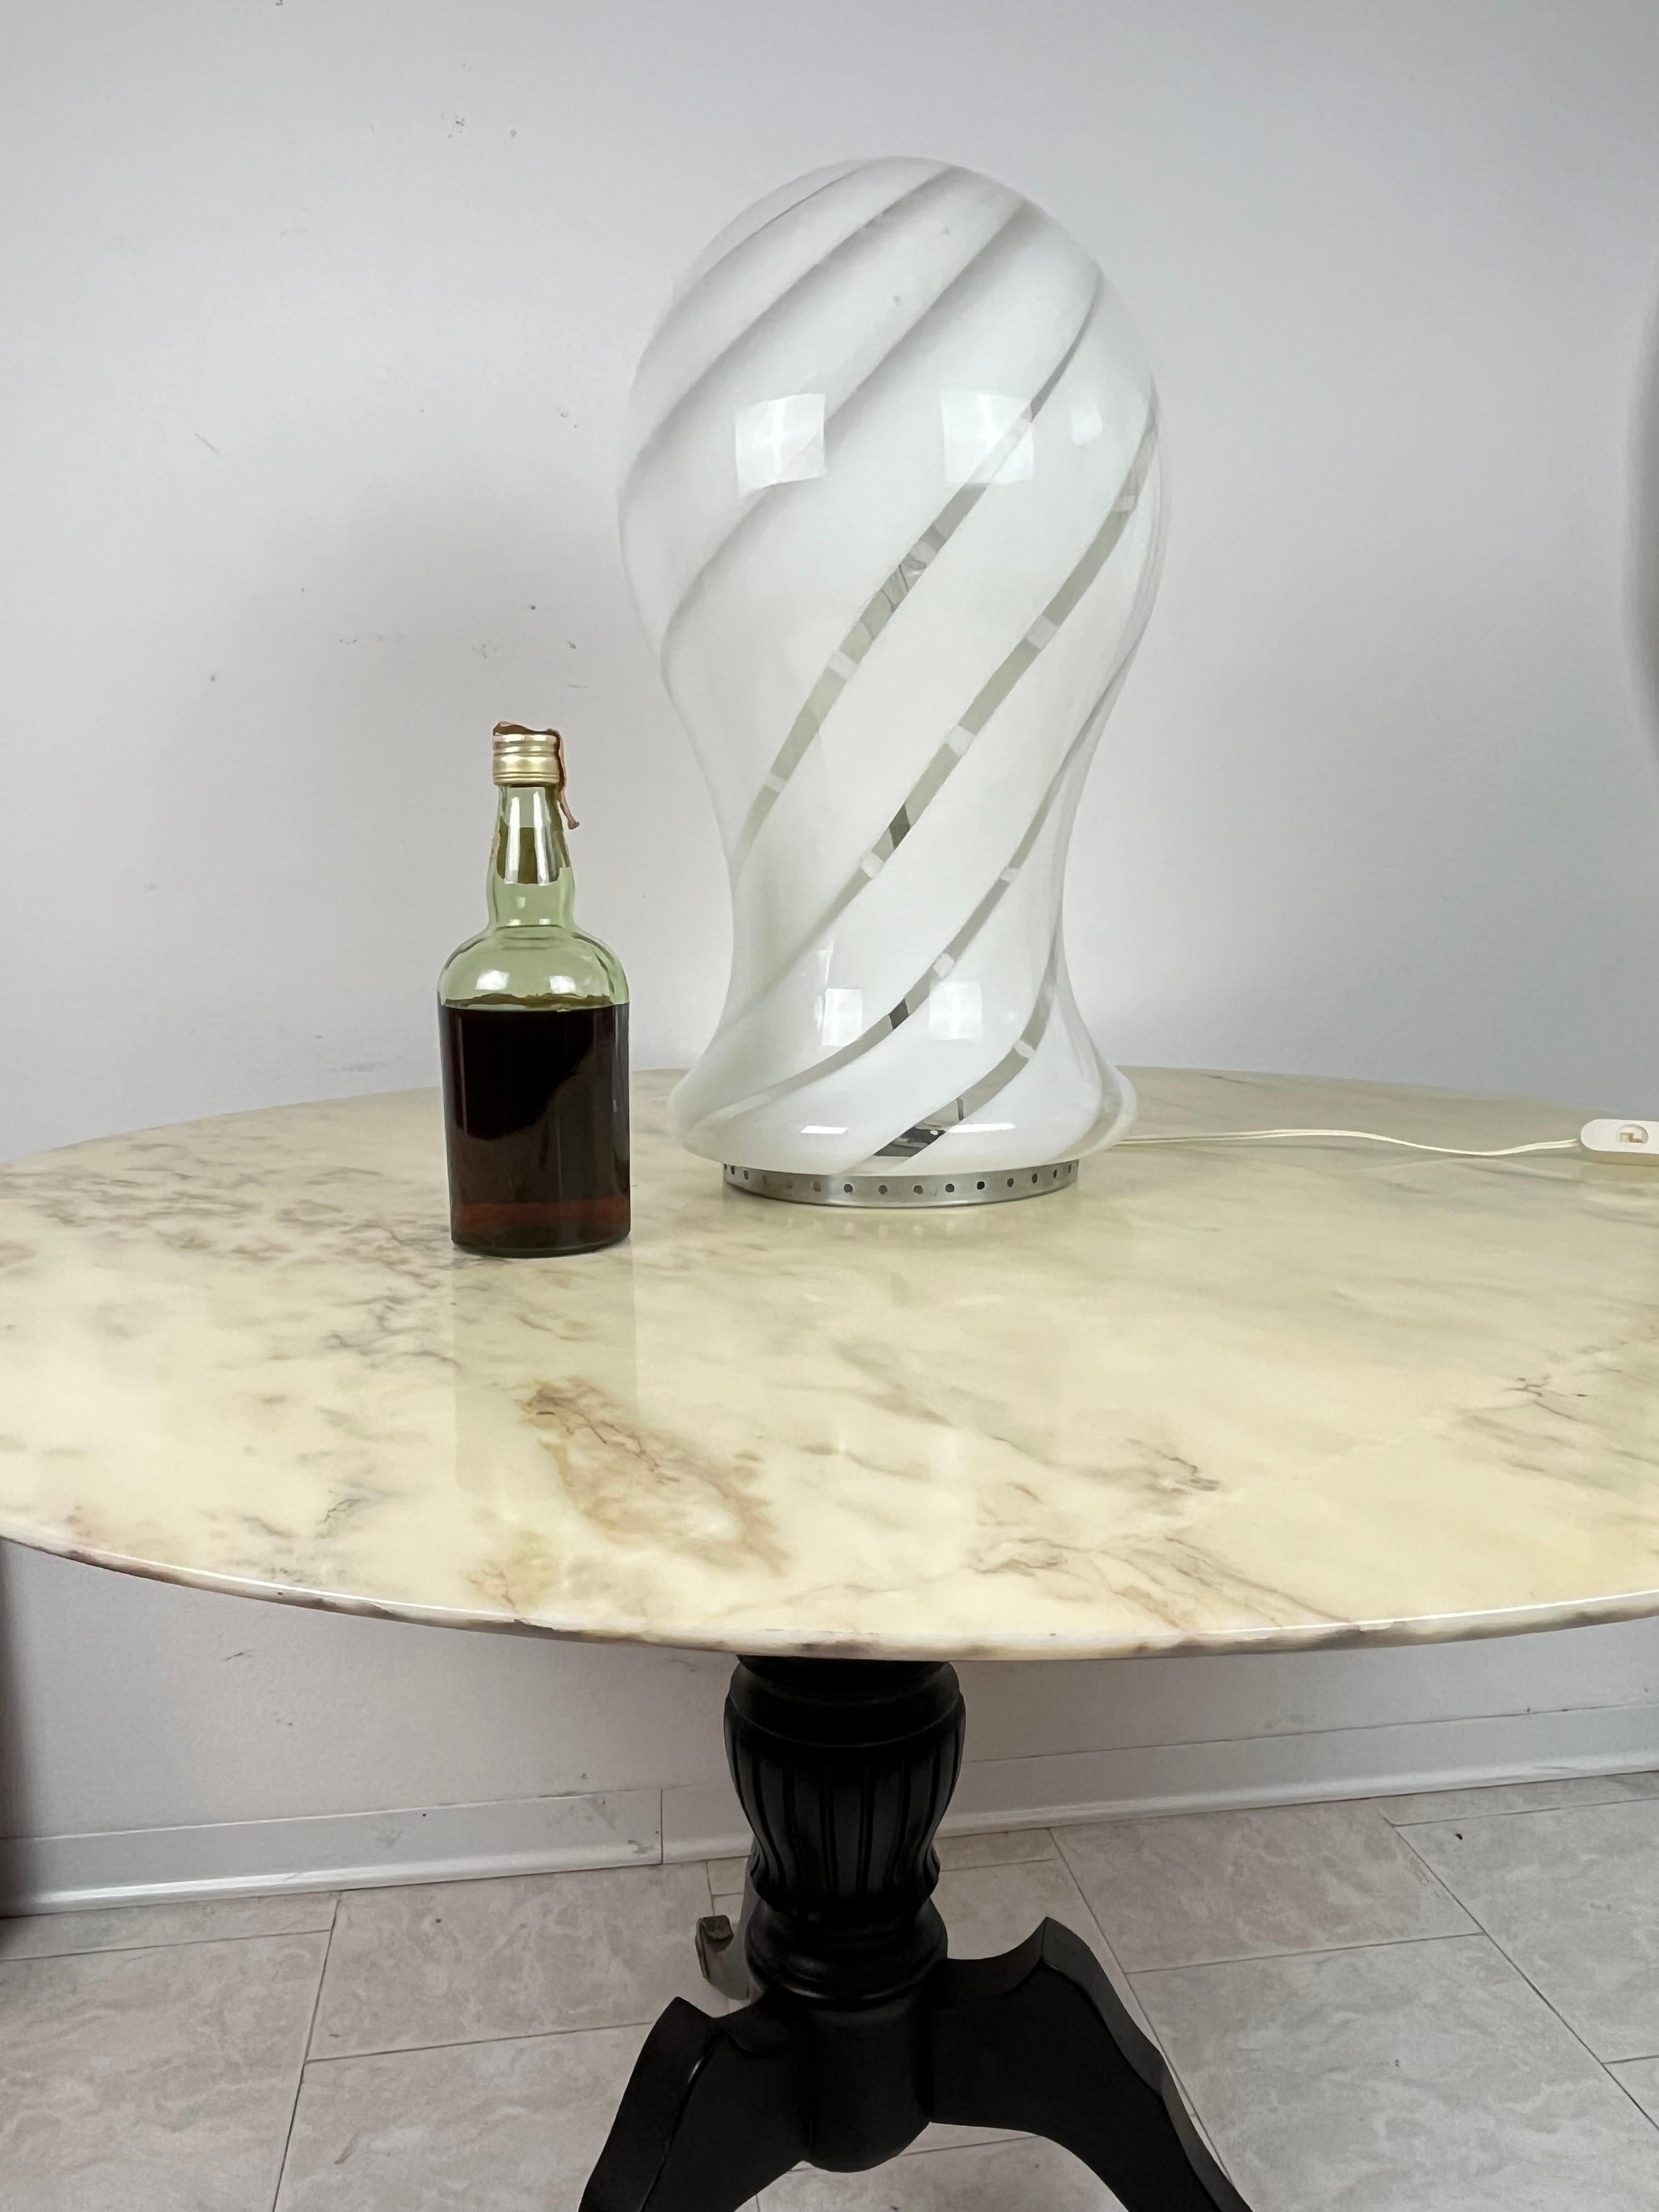 Gran lámpara de sobremesa de cristal de Murano, fabricada en Italia, años 70
Intacta y funcional, 55 cm de altura.
Elaboración artesanal, adquirida en Venecia.

Garantizamos un embalaje adecuado y realizaremos el envío a través de DHL, asegurando el